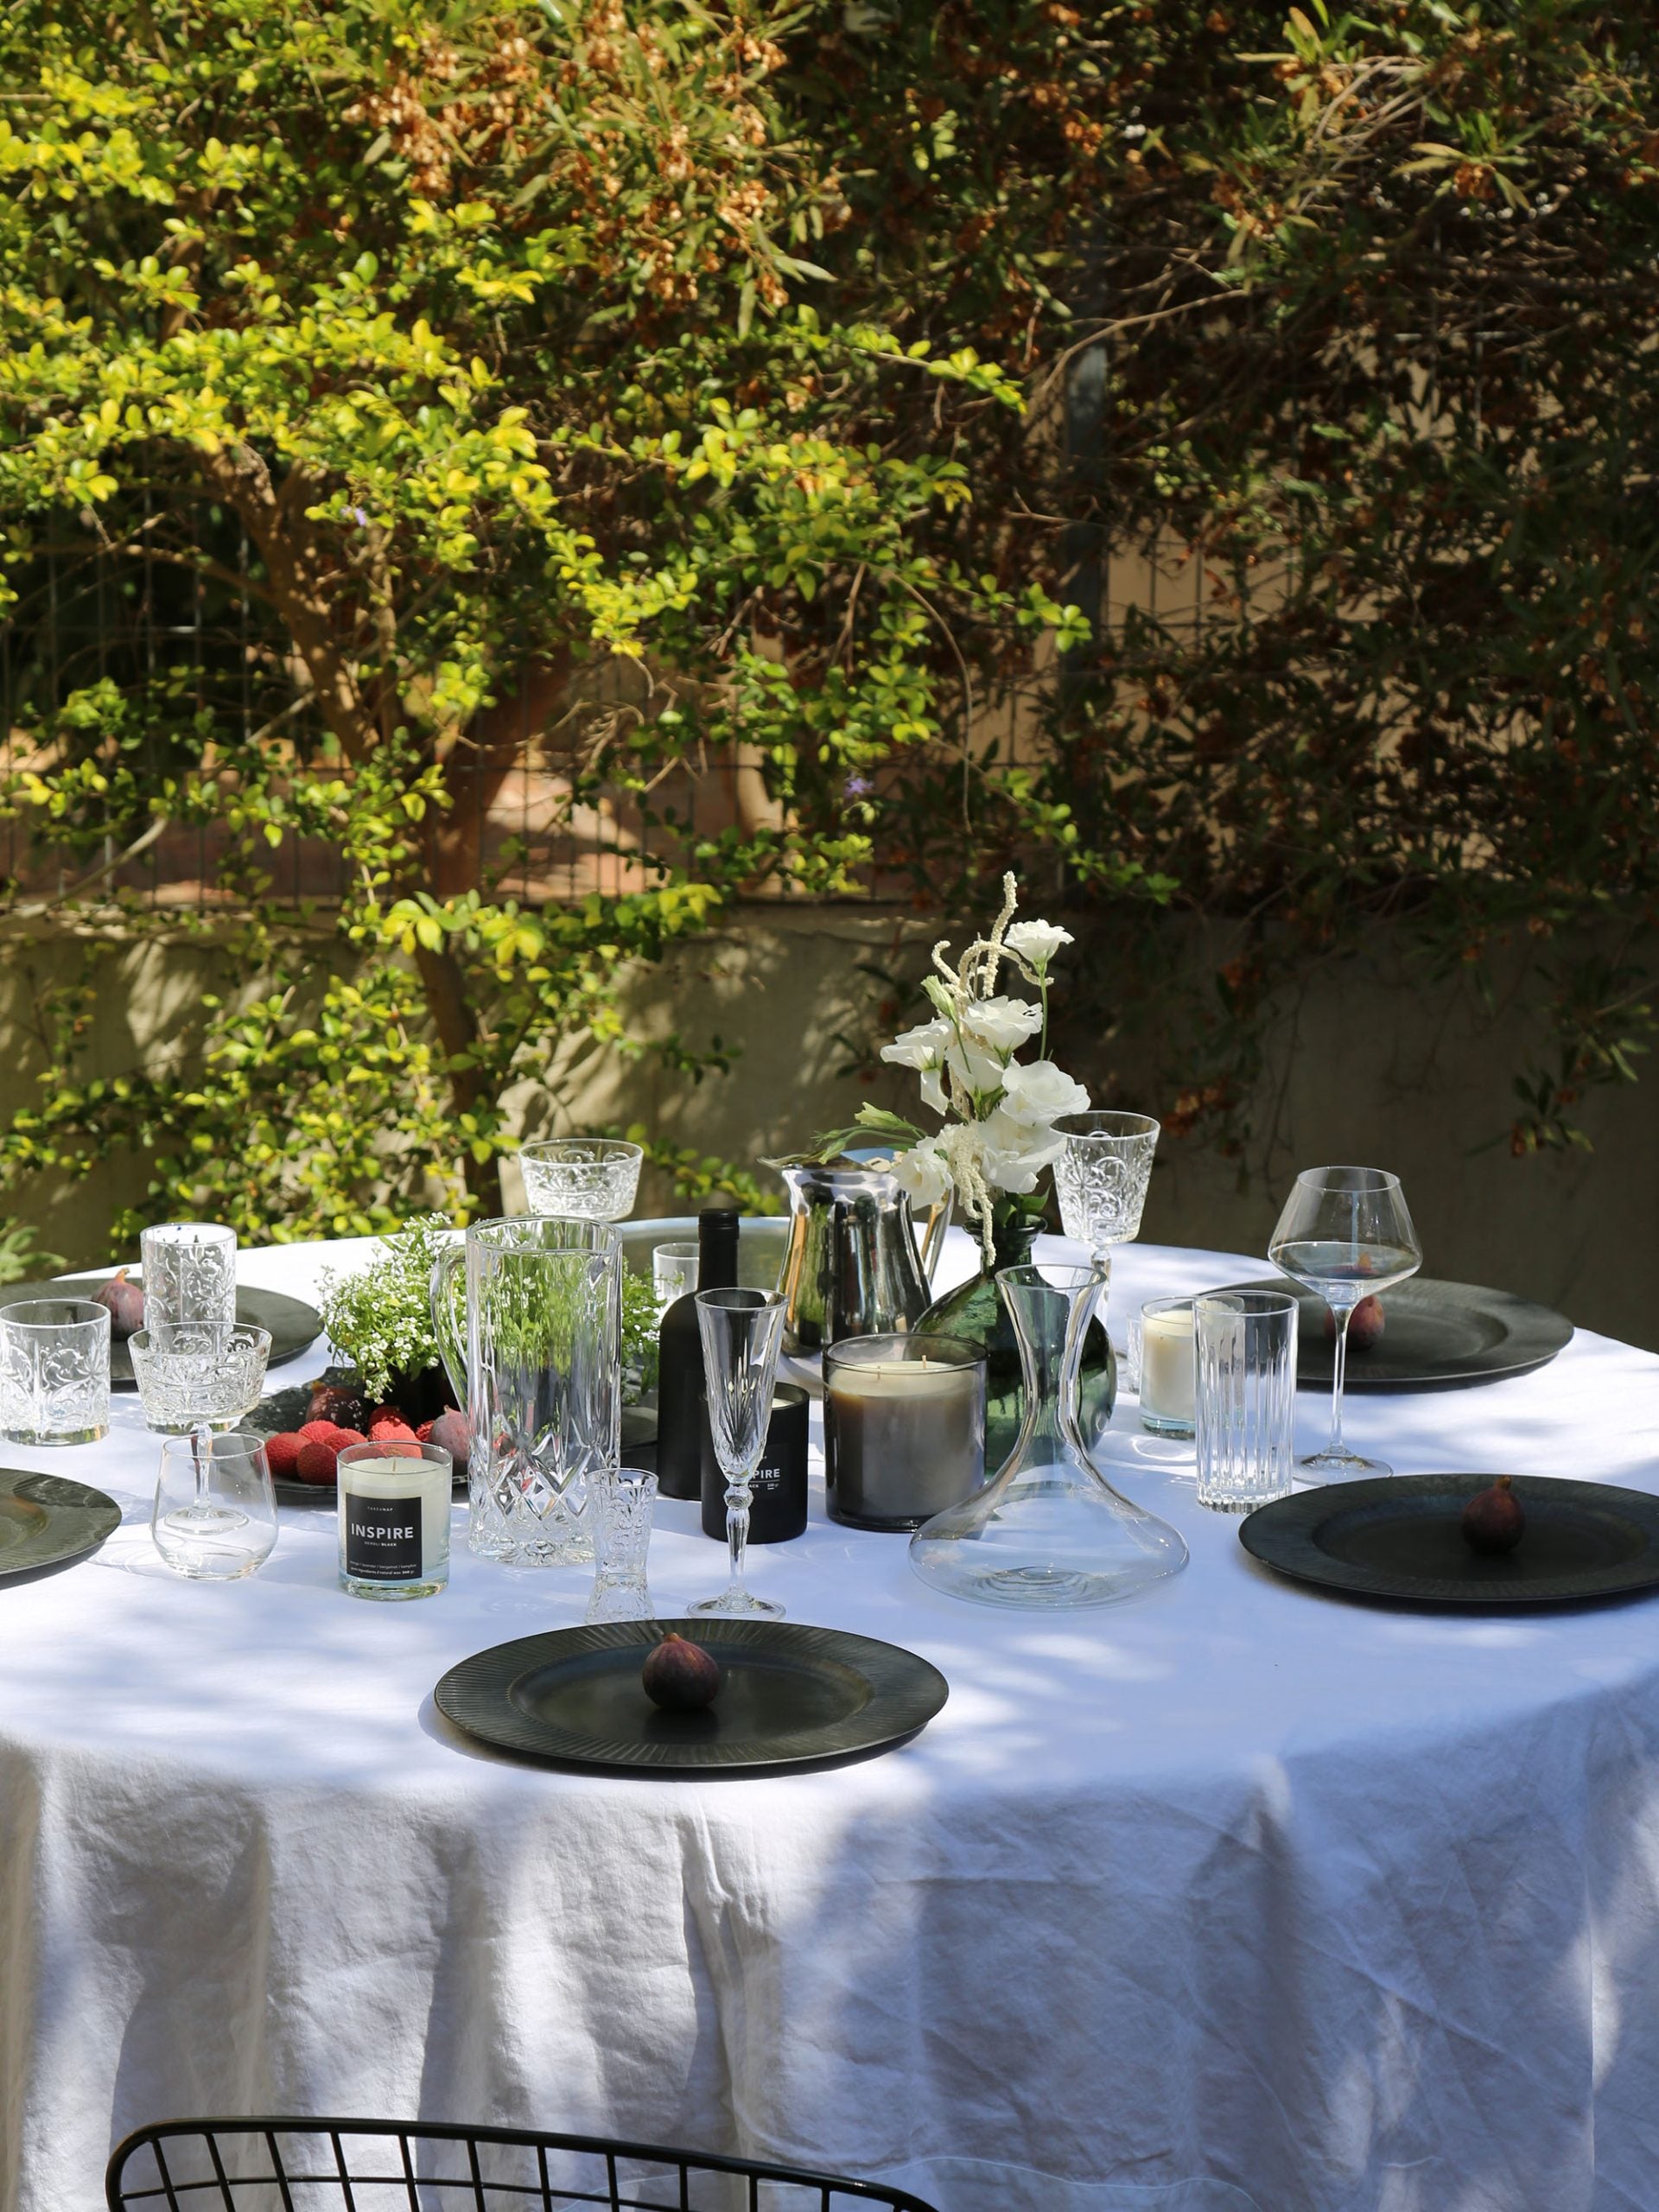 כוסות שמפנייה, מים, נר ריחני, וכד מים מזכוכית על שולחן ערוך עם מפה לבנה וצלחות בחצר באור יום